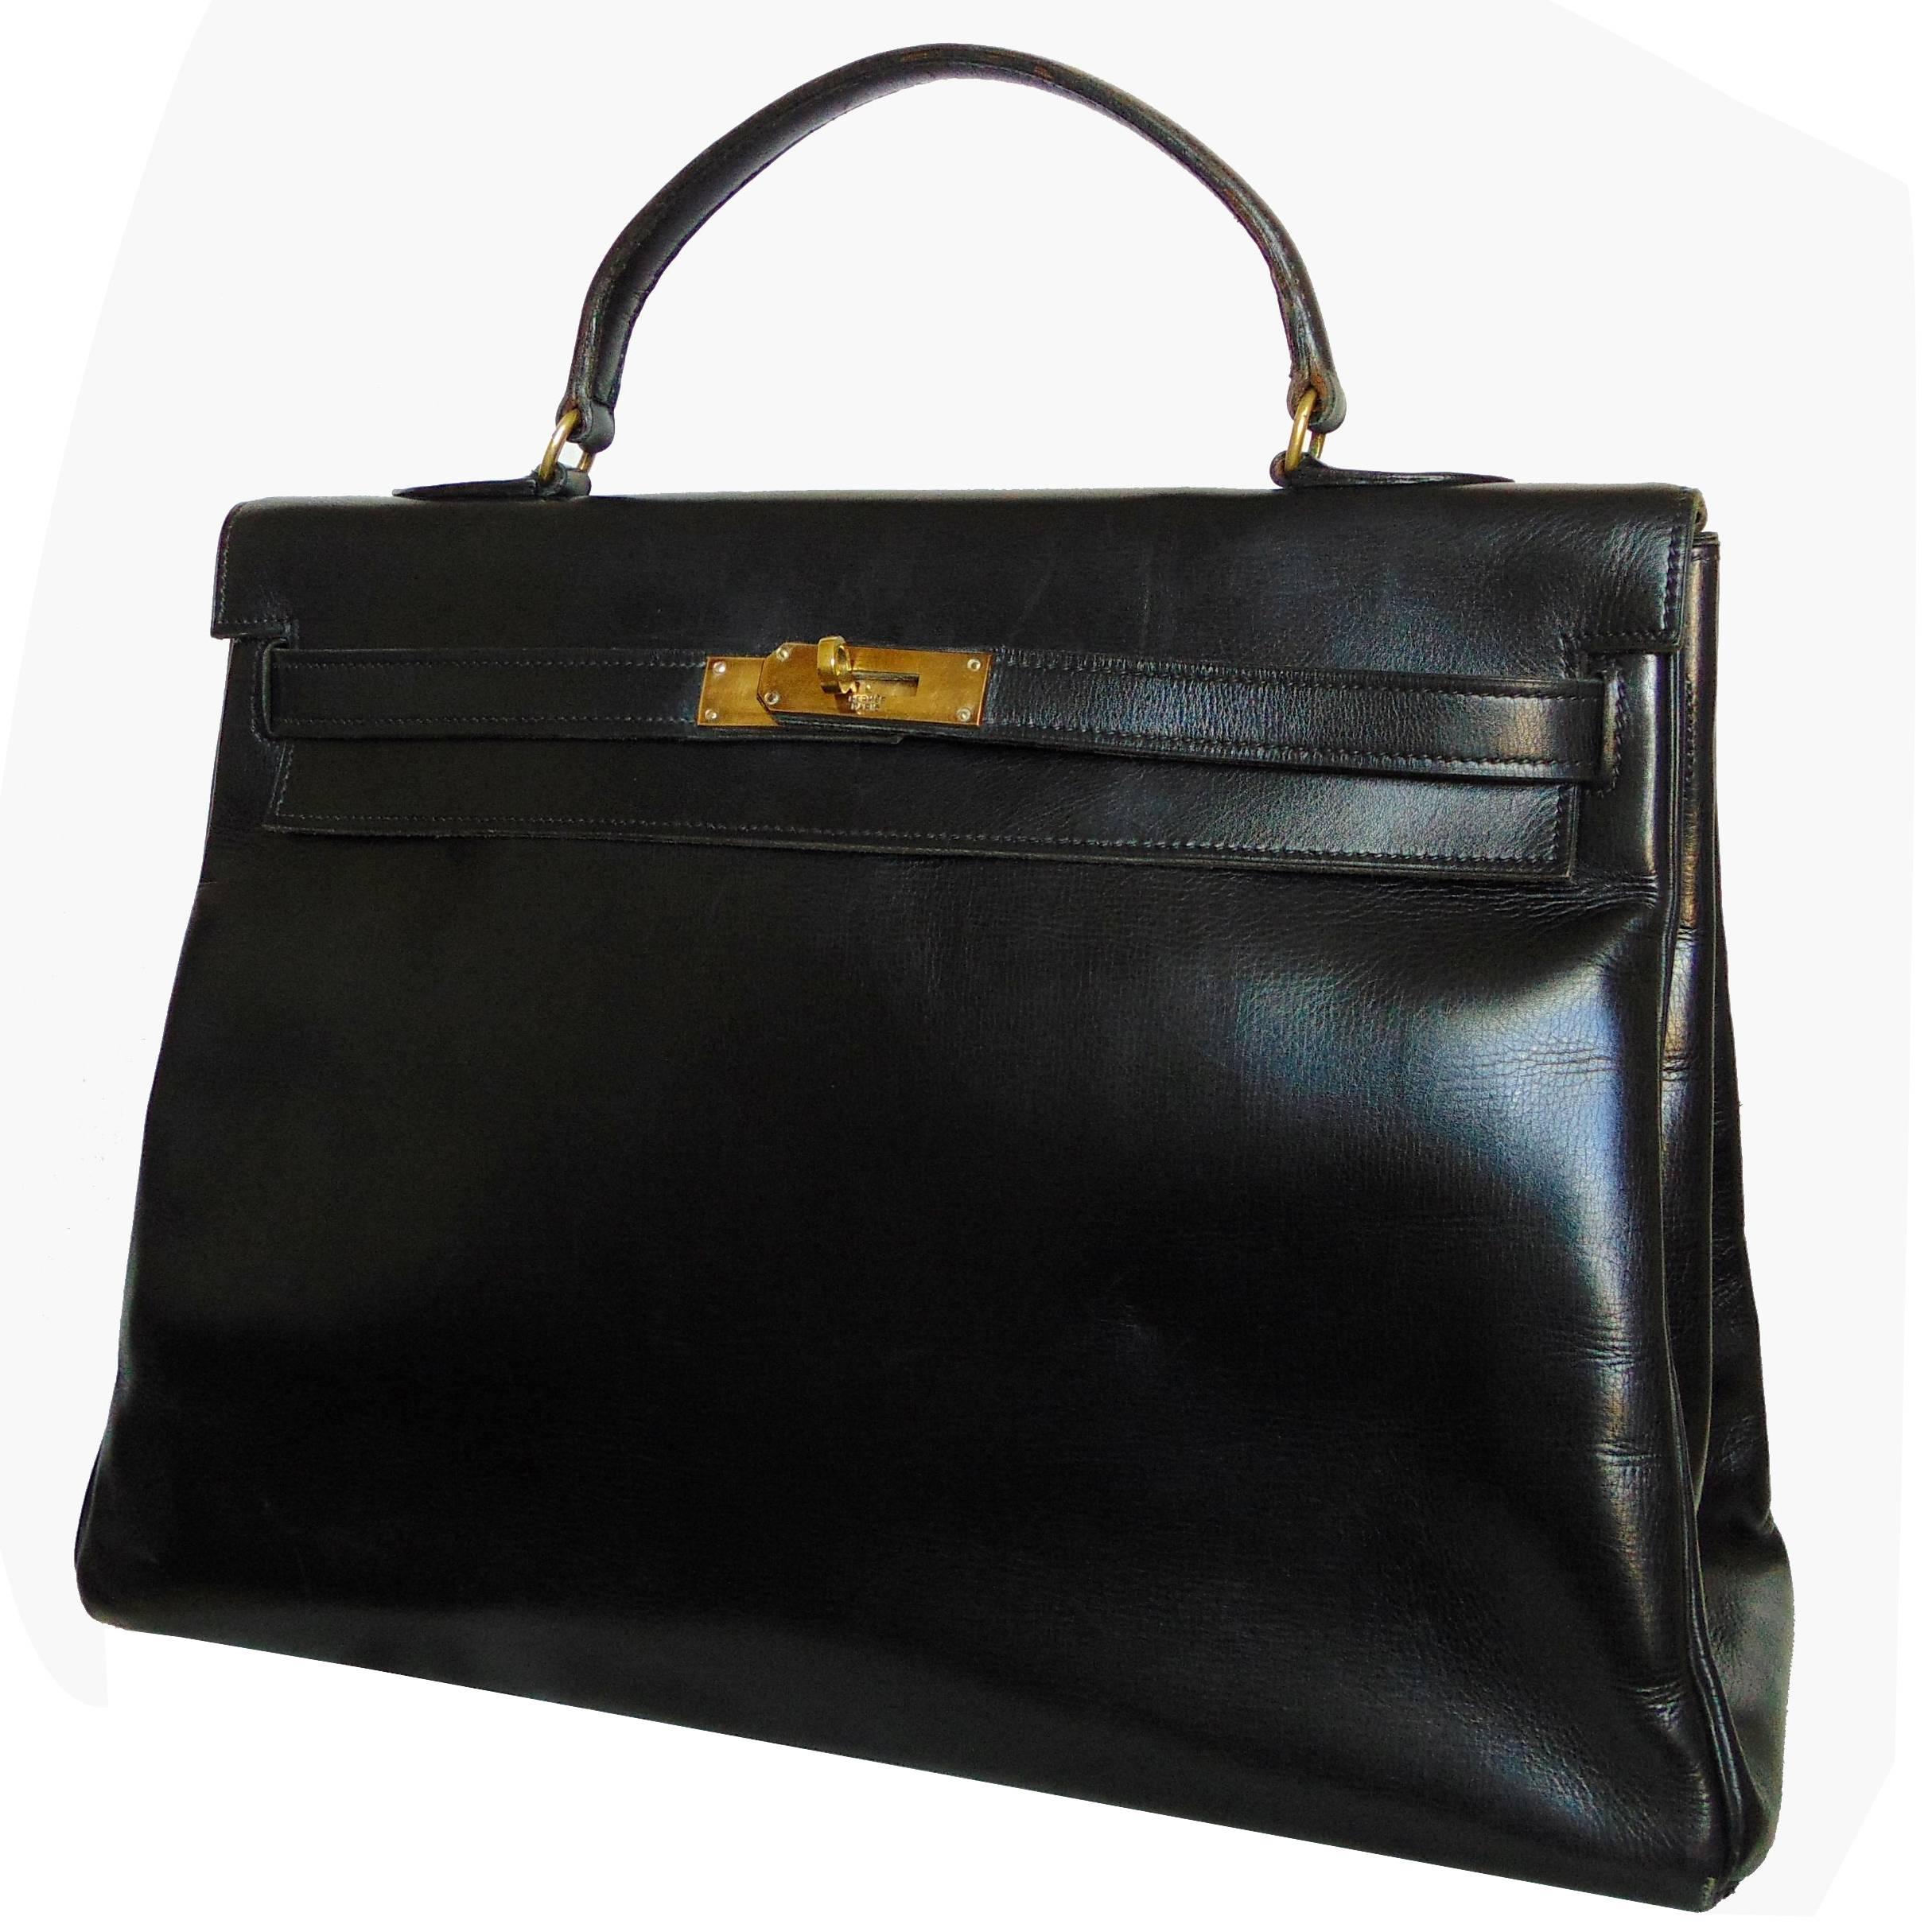 Rare 1947 Hermes Kelly Bag Retourne 35cm Sac a Depeches dans une boite en cuir noir